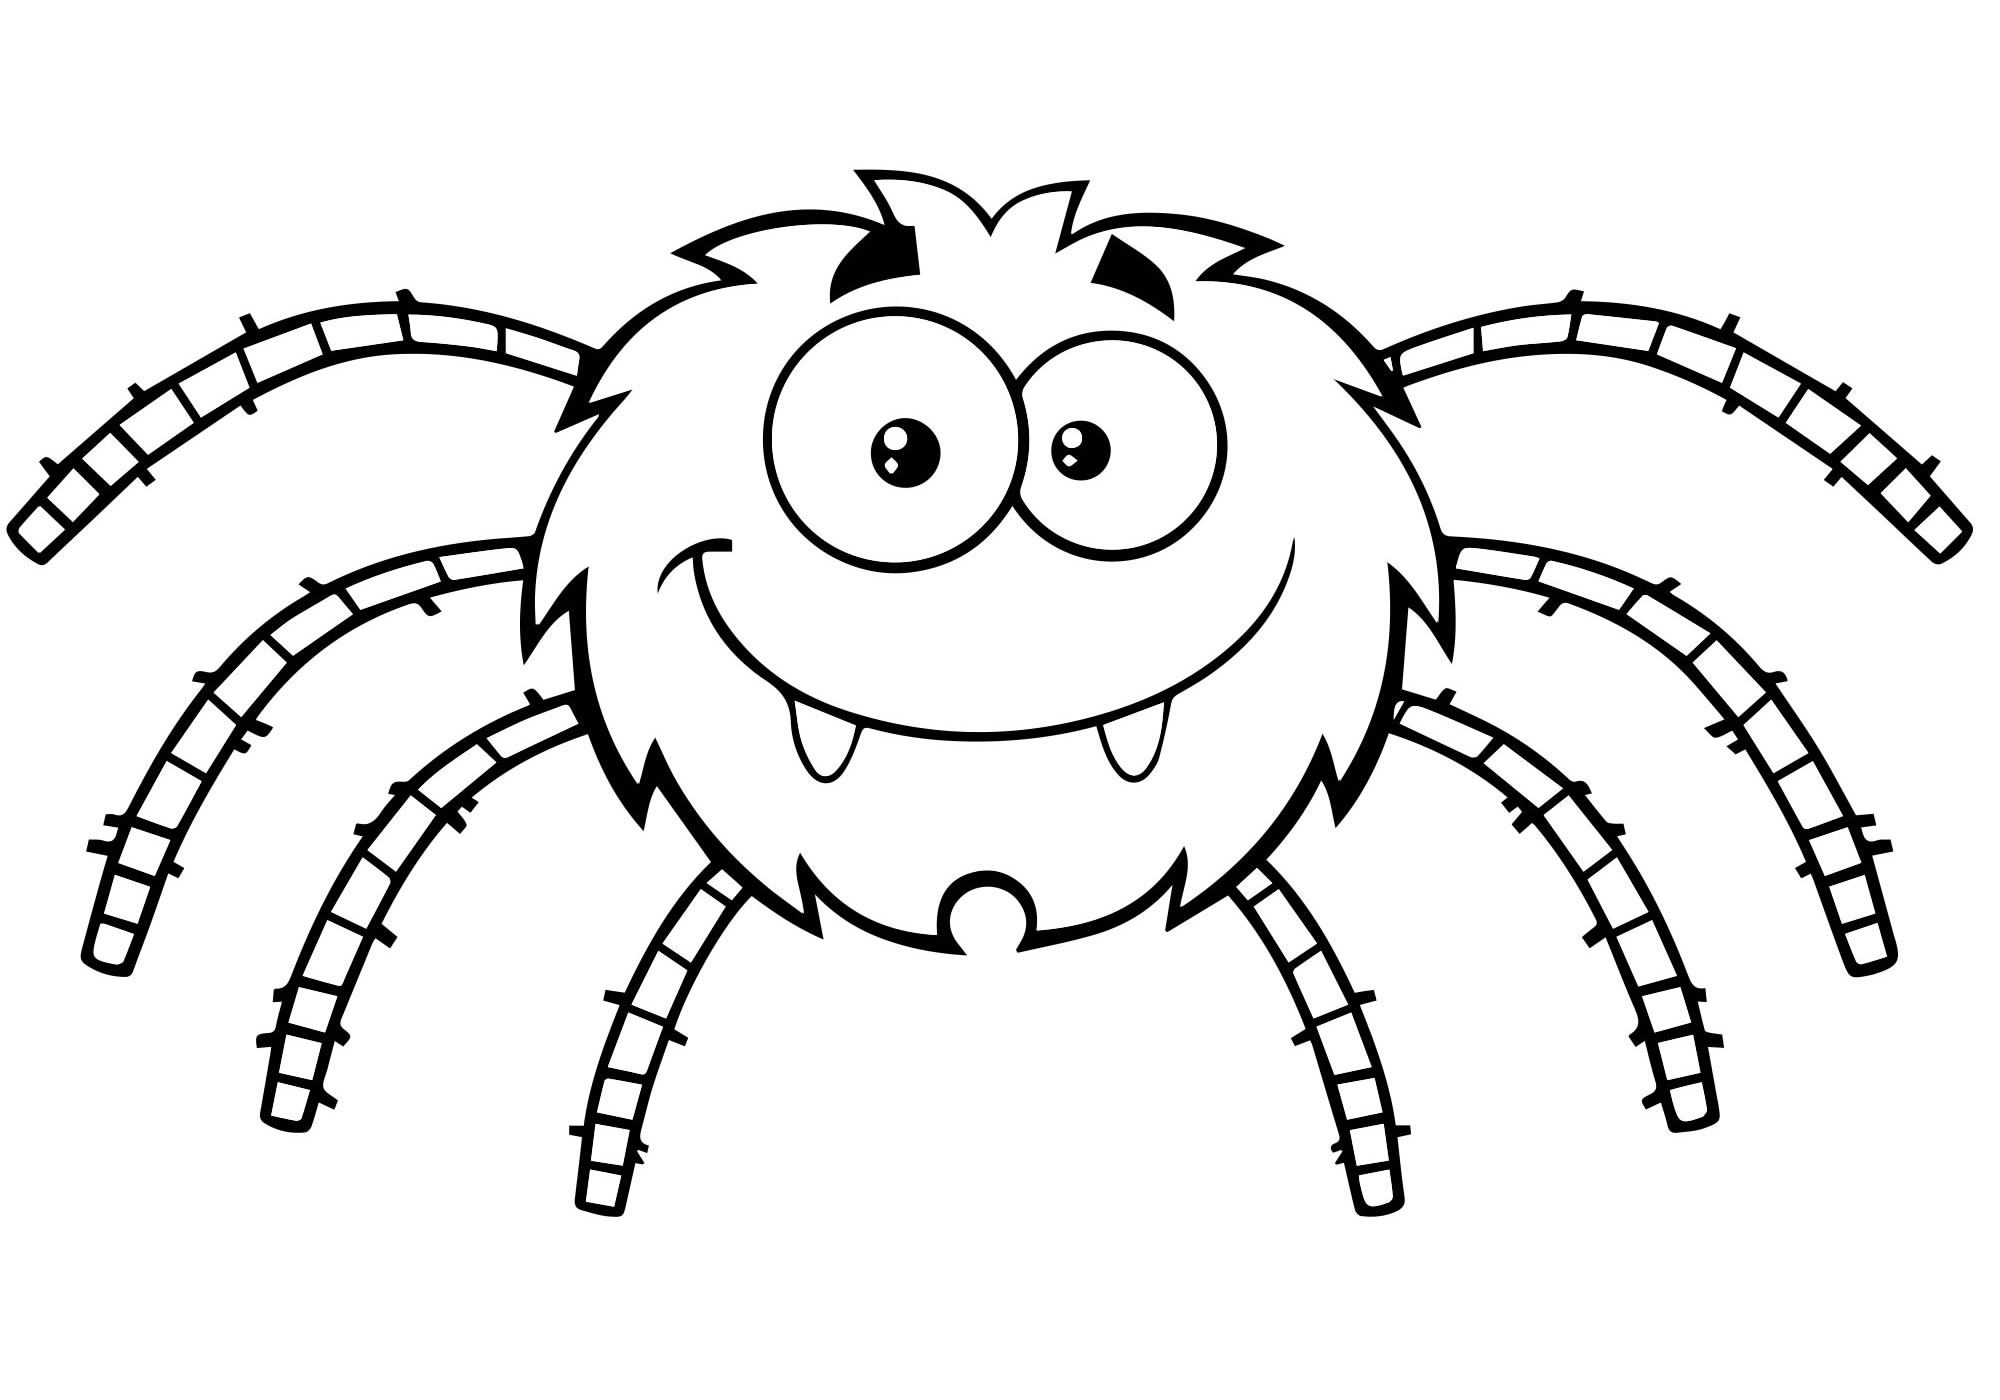 Фото Книжка раскраска паук, более 22 качественных бесплатных стоковых фото